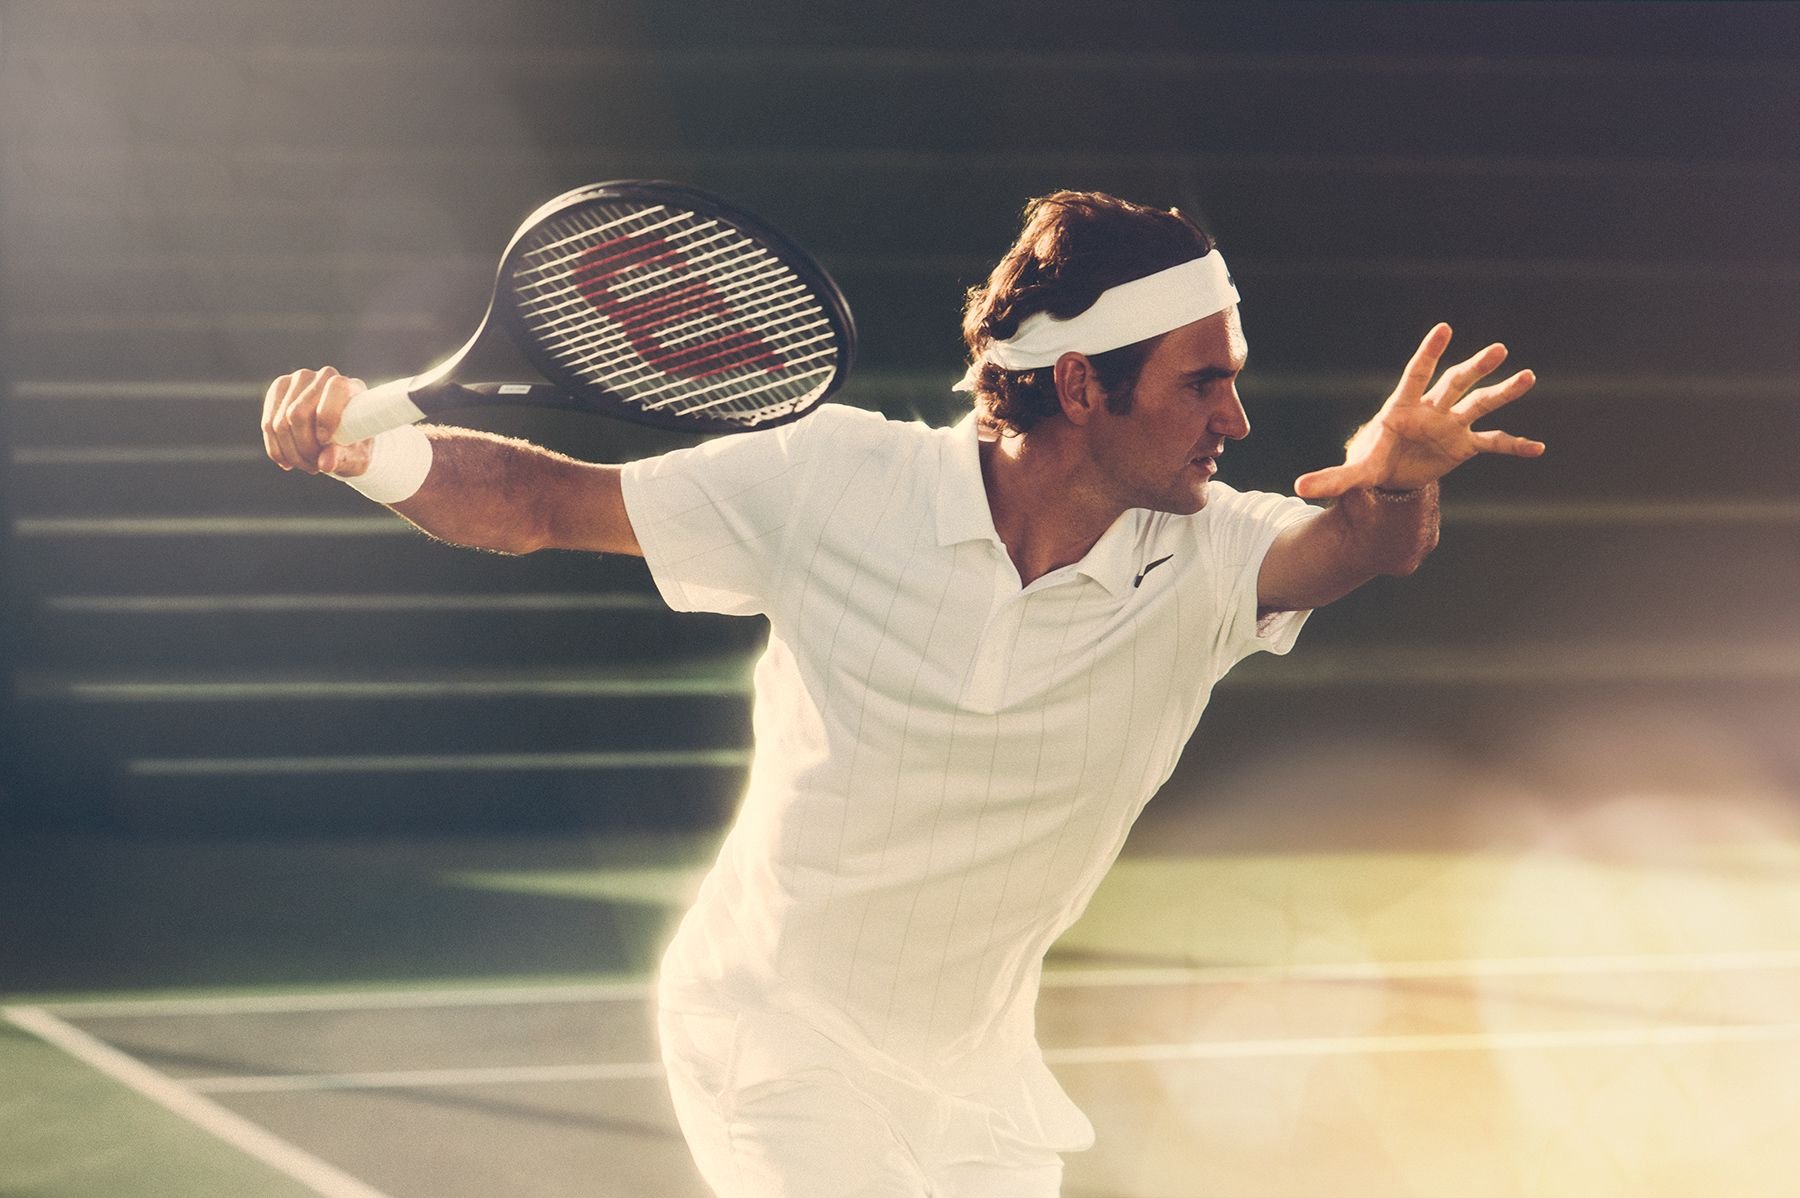 Теннисный игрок. Роджер Федерер с длинными волосами. Роджер Федерер Уимблдон. Роджер Федерер на корте. Теннис фотосессия Федерера.